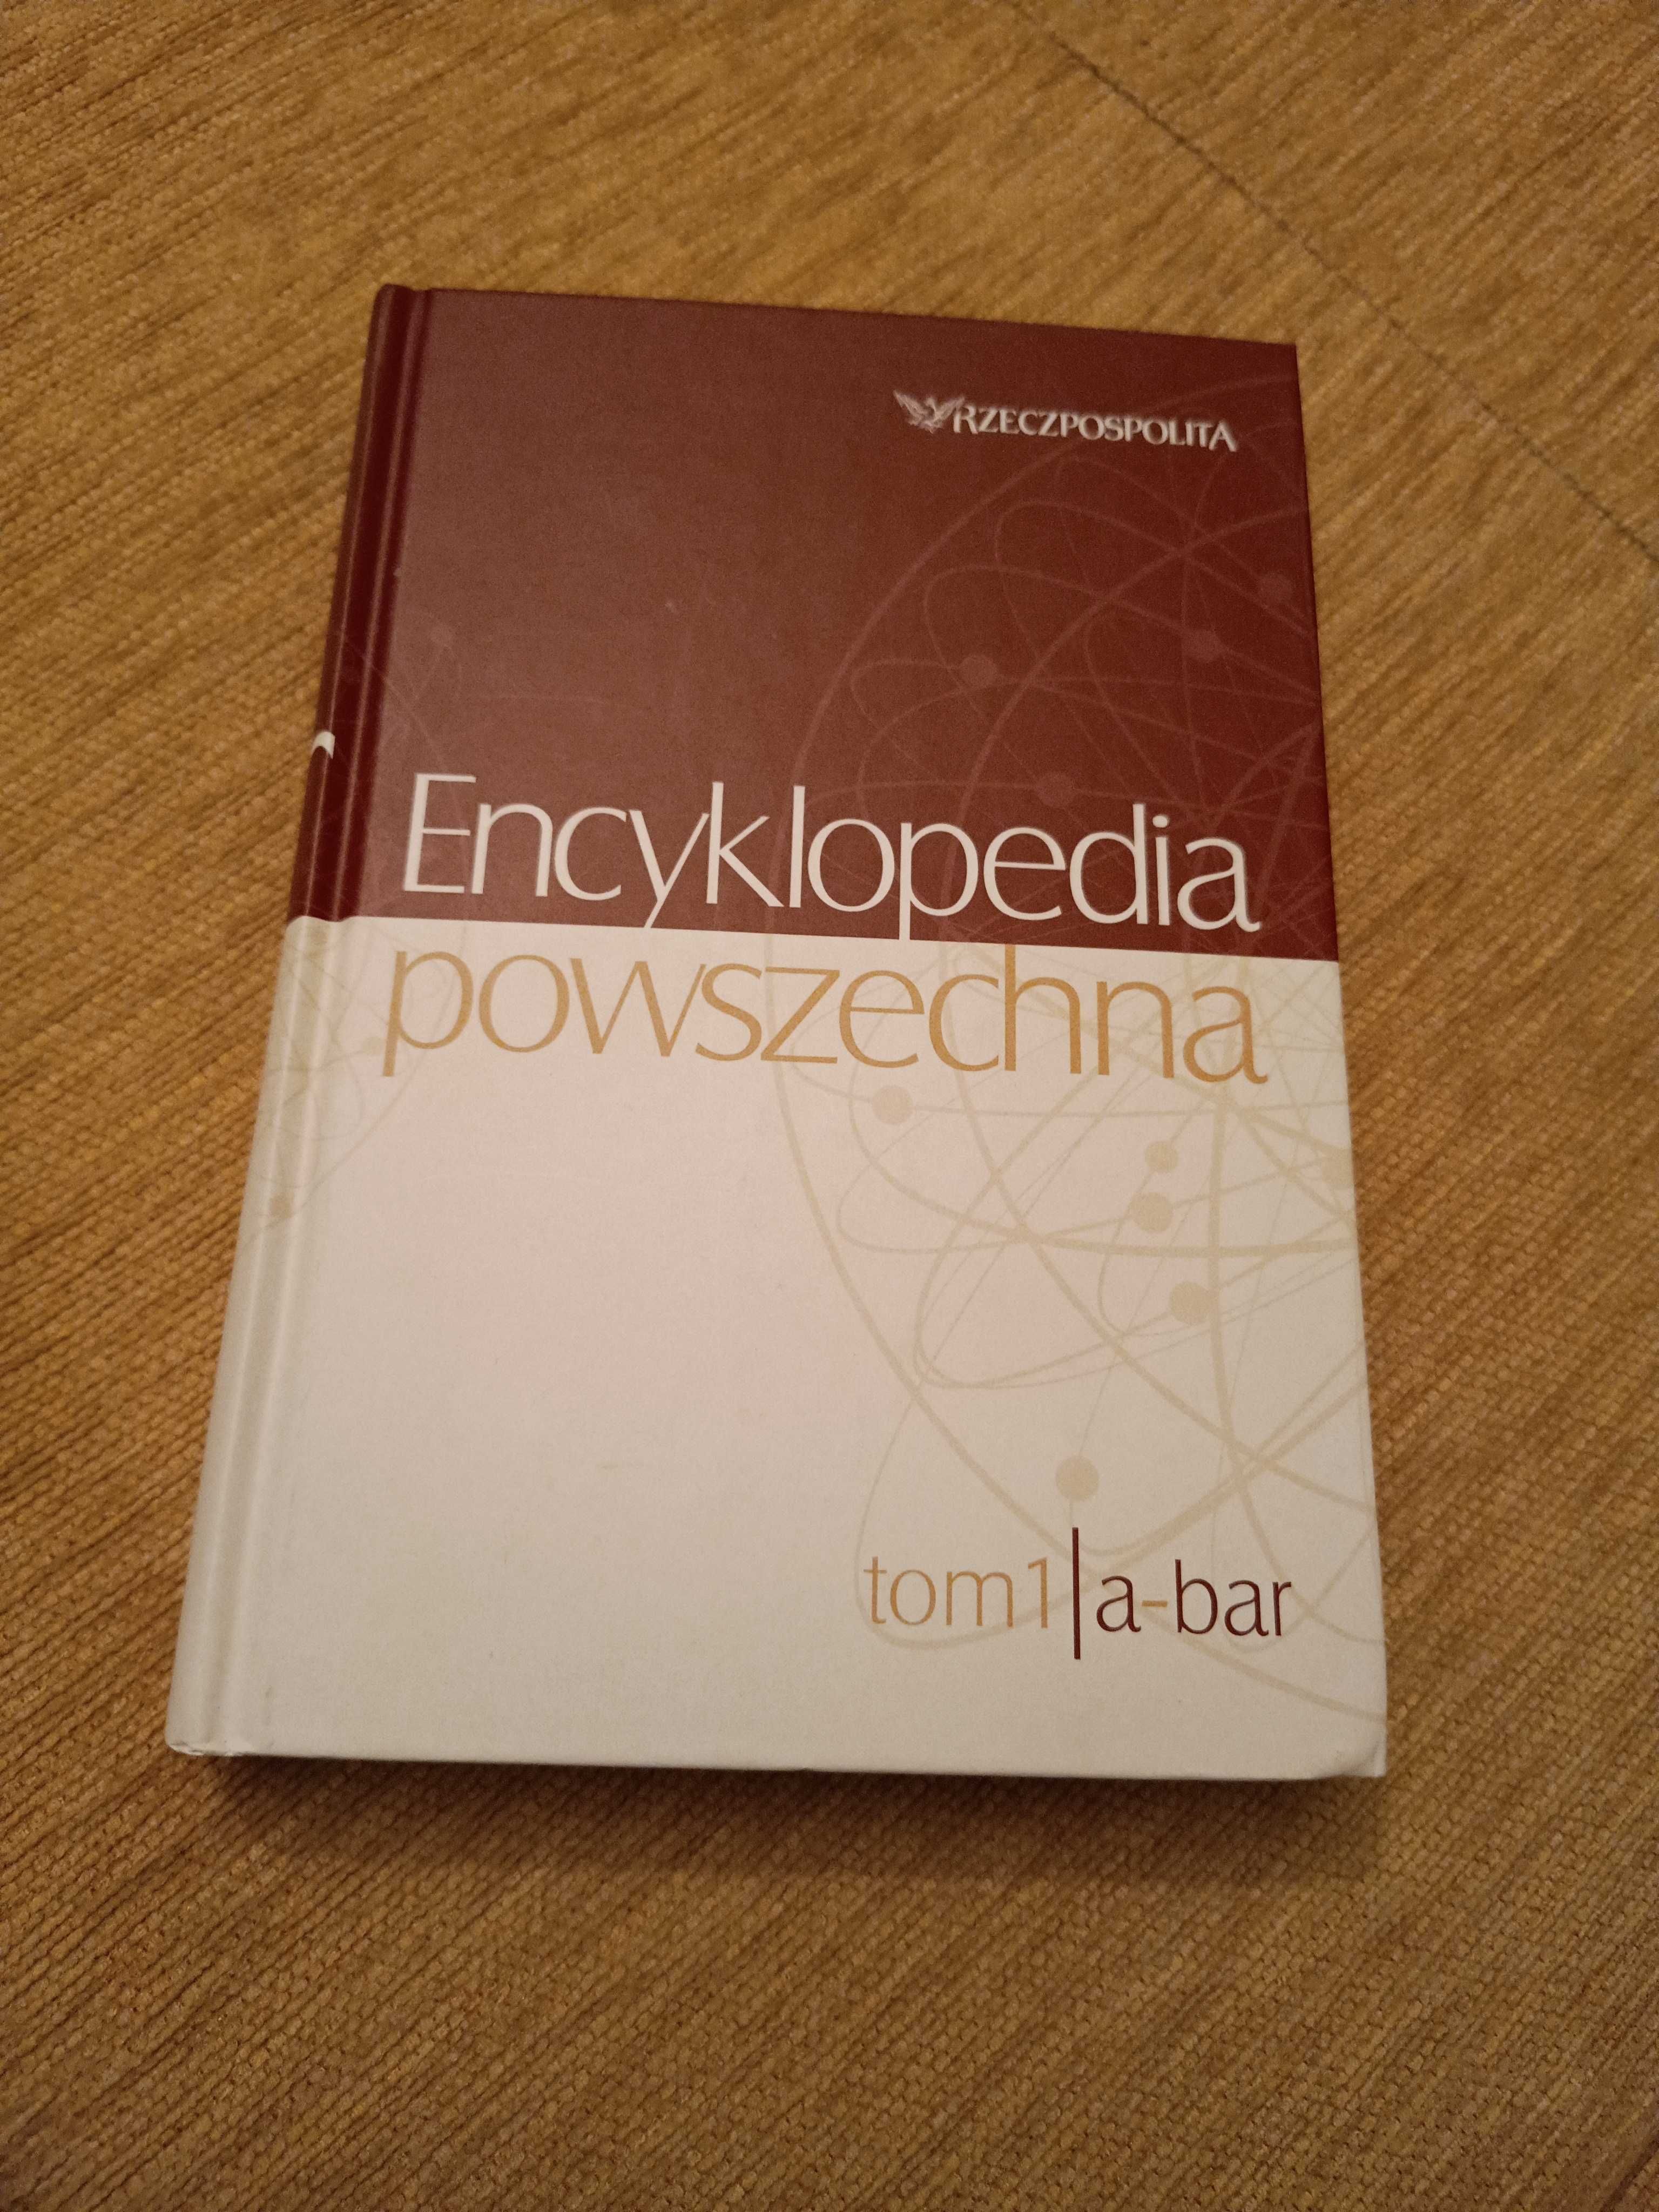 Encyklopedia powszechna Rzeczpospolita tom 1